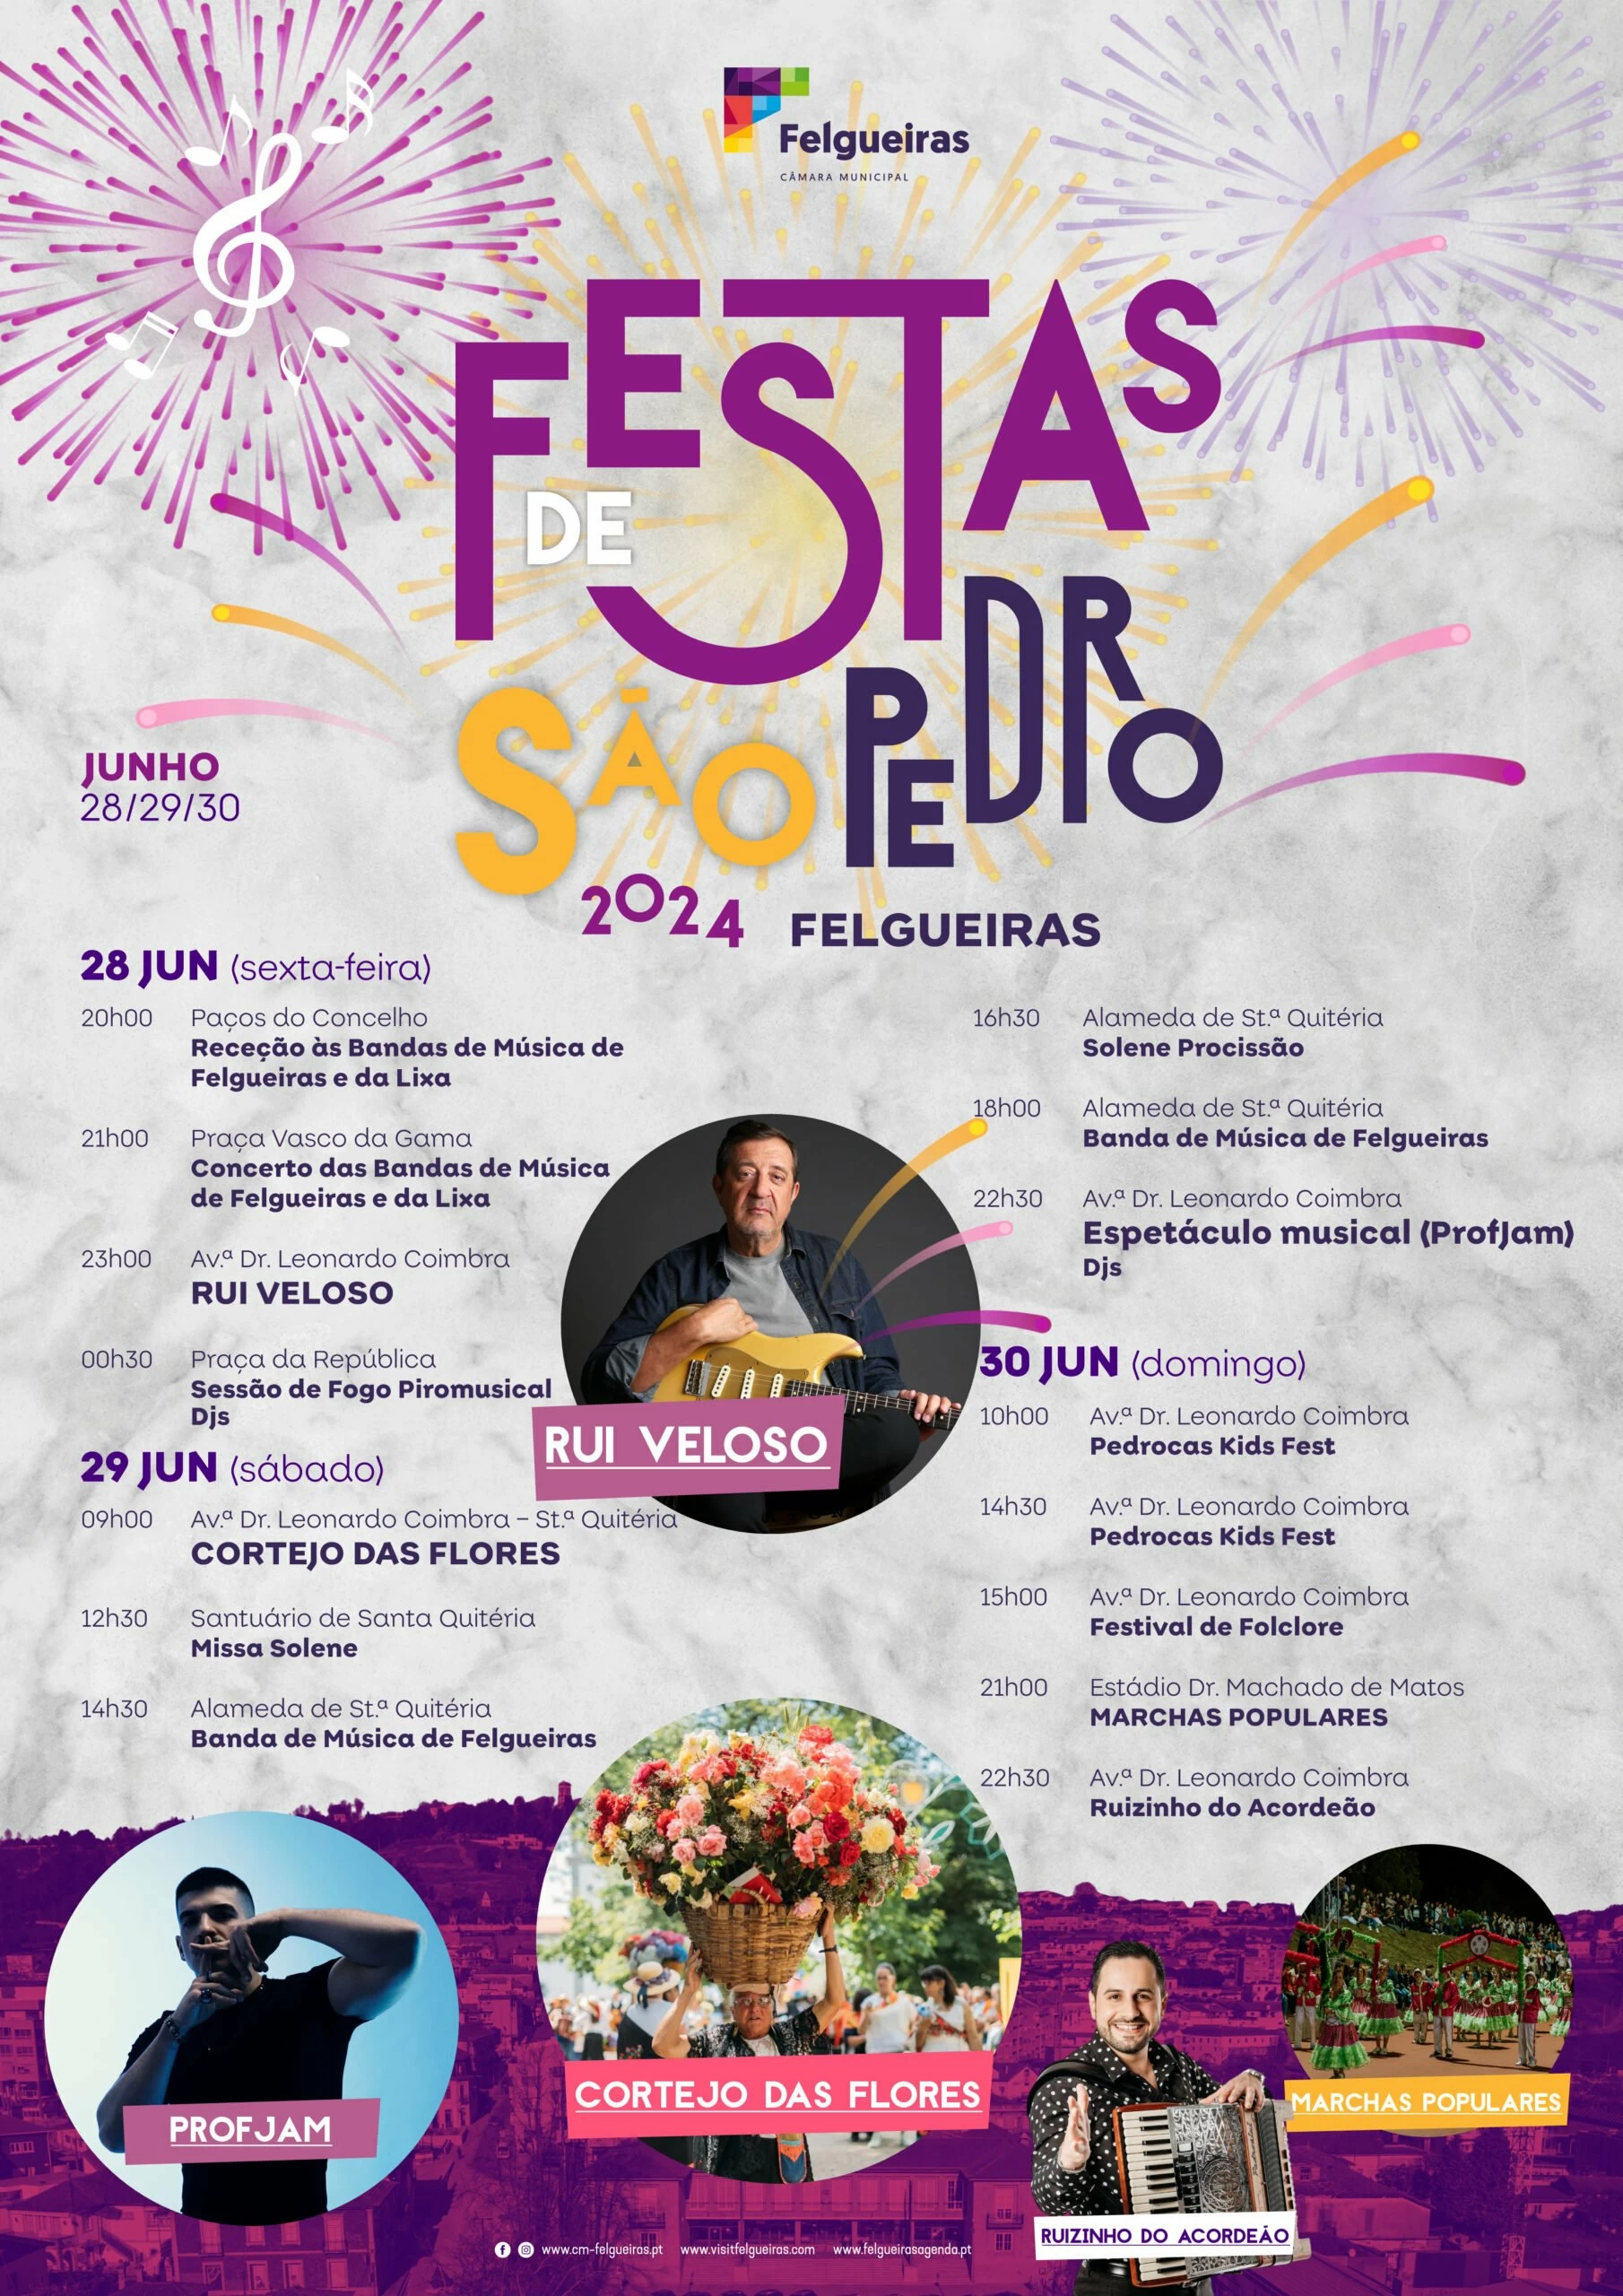 Festas de São Pedro 2024 - Felgueiras